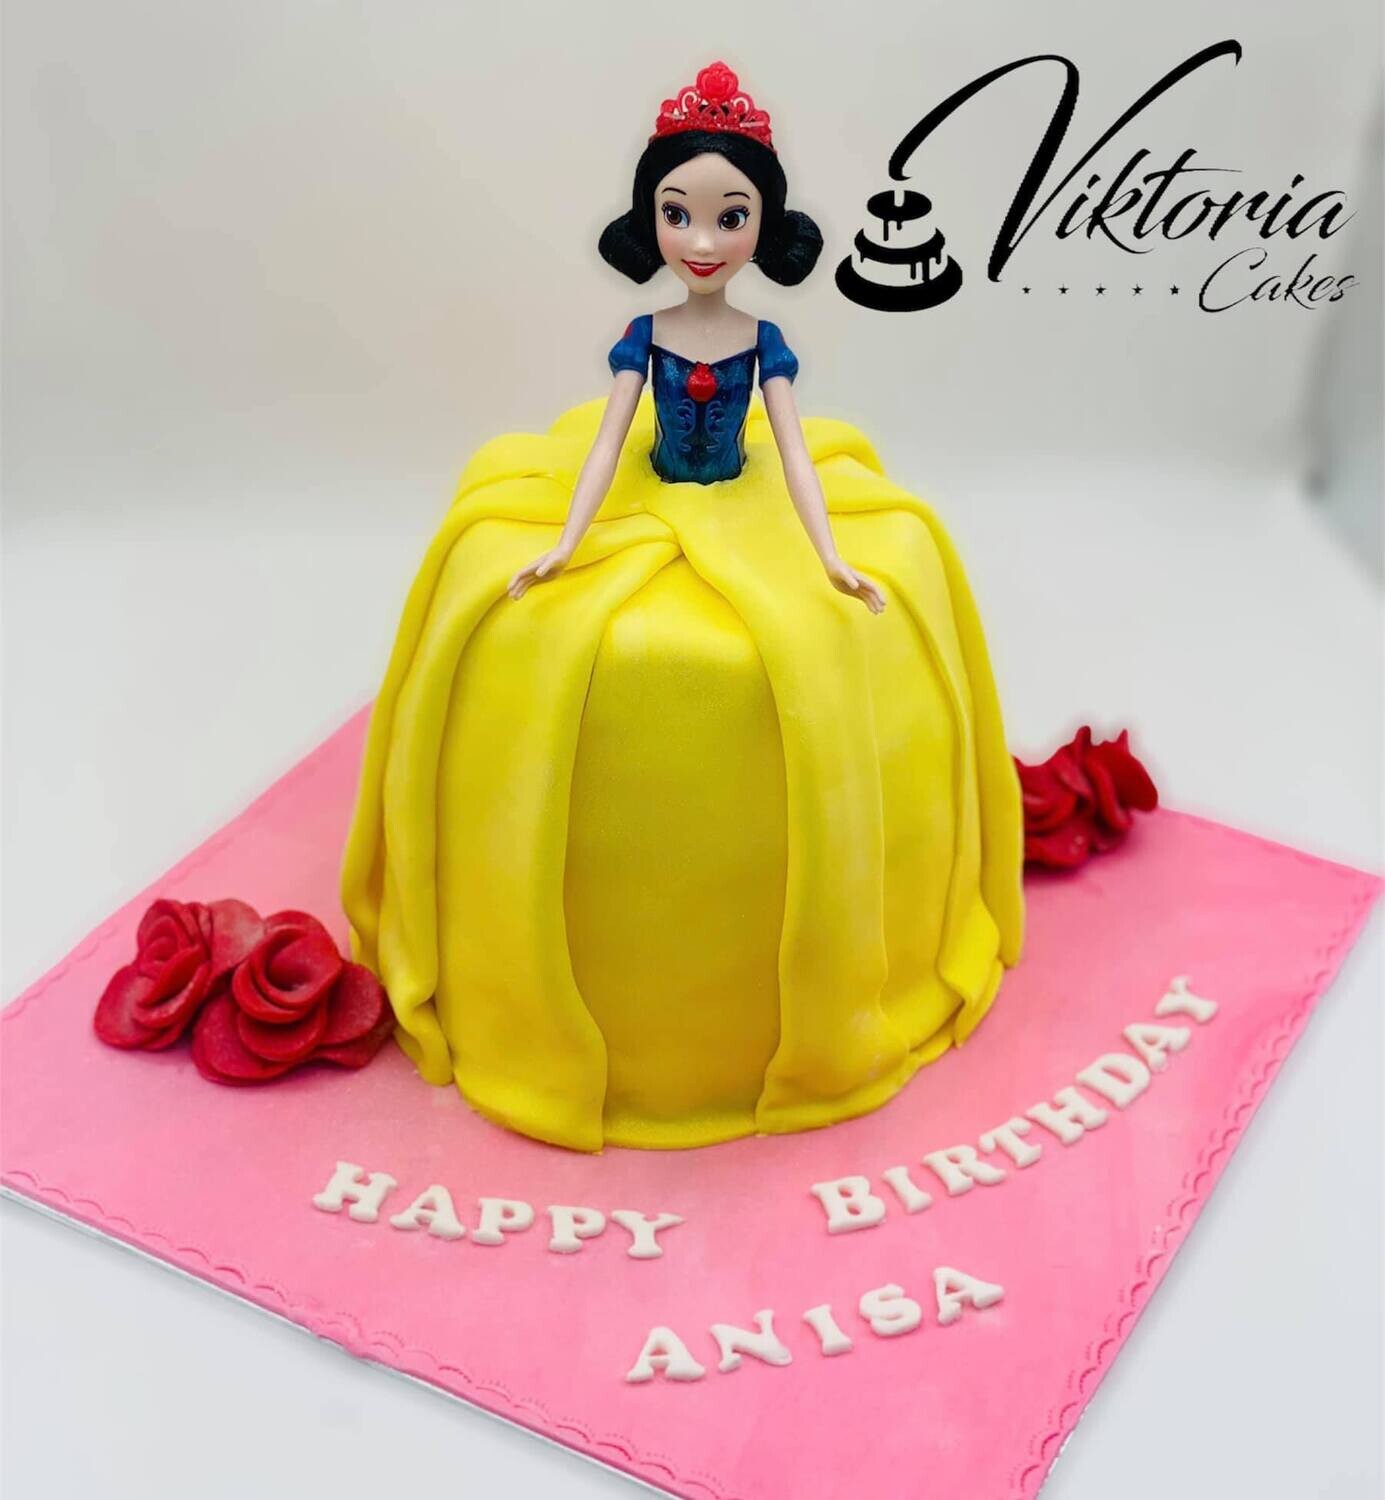 Princess Cake Snow White cake birthday cake Square Royal Icing